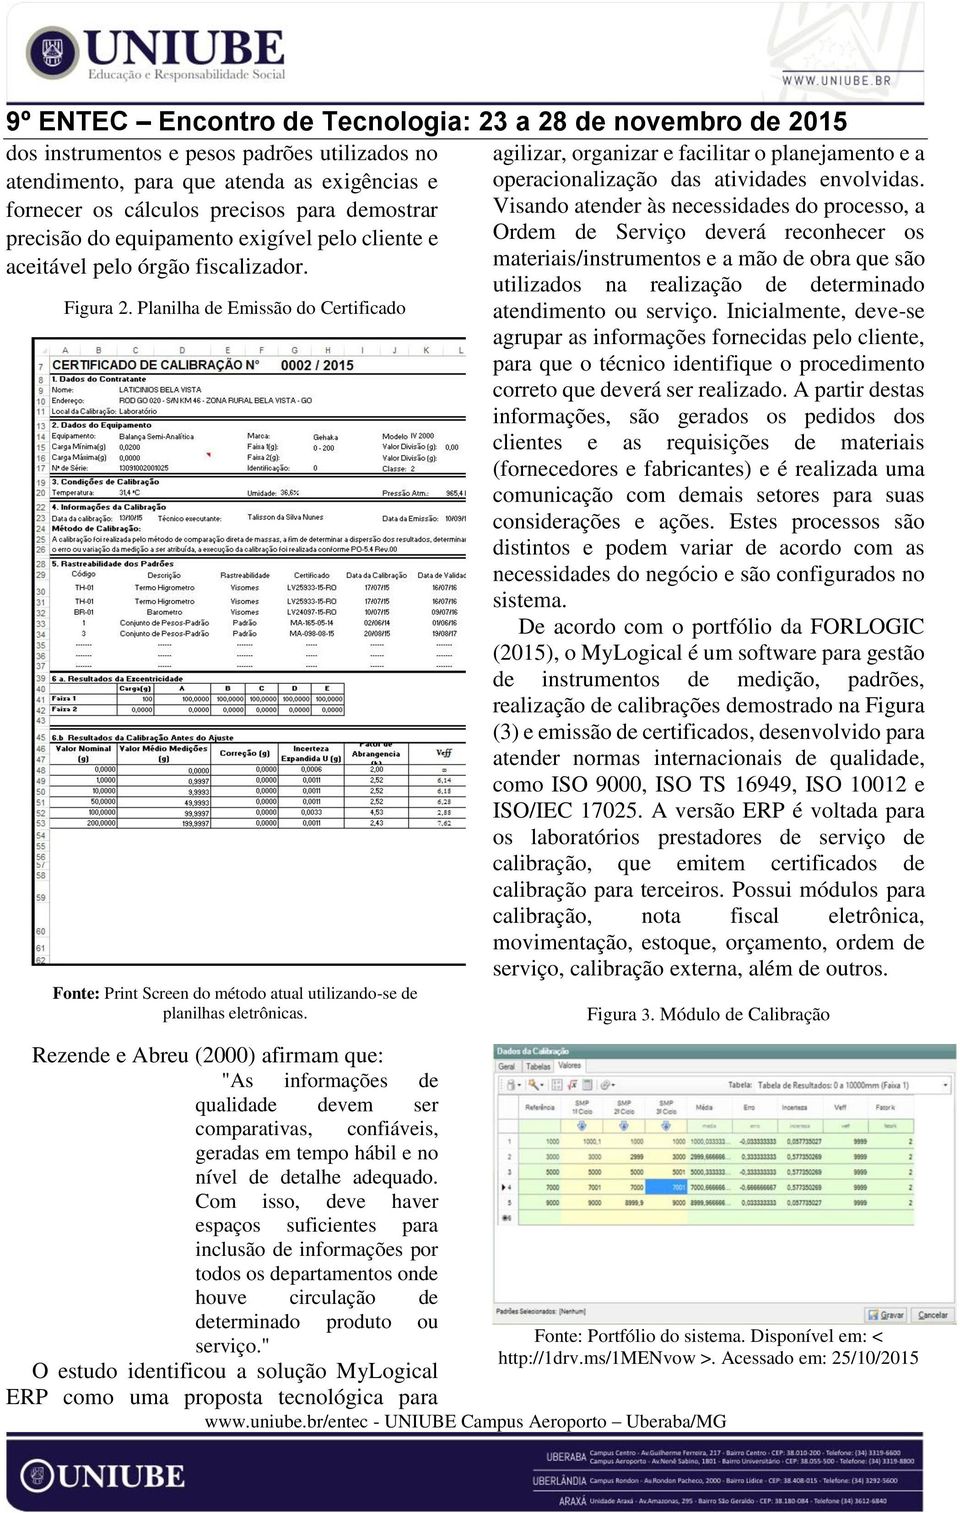 Rezende e Abreu (2000) afirmam que: "As informações de qualidade devem ser comparativas, confiáveis, geradas em tempo hábil e no nível de detalhe adequado.